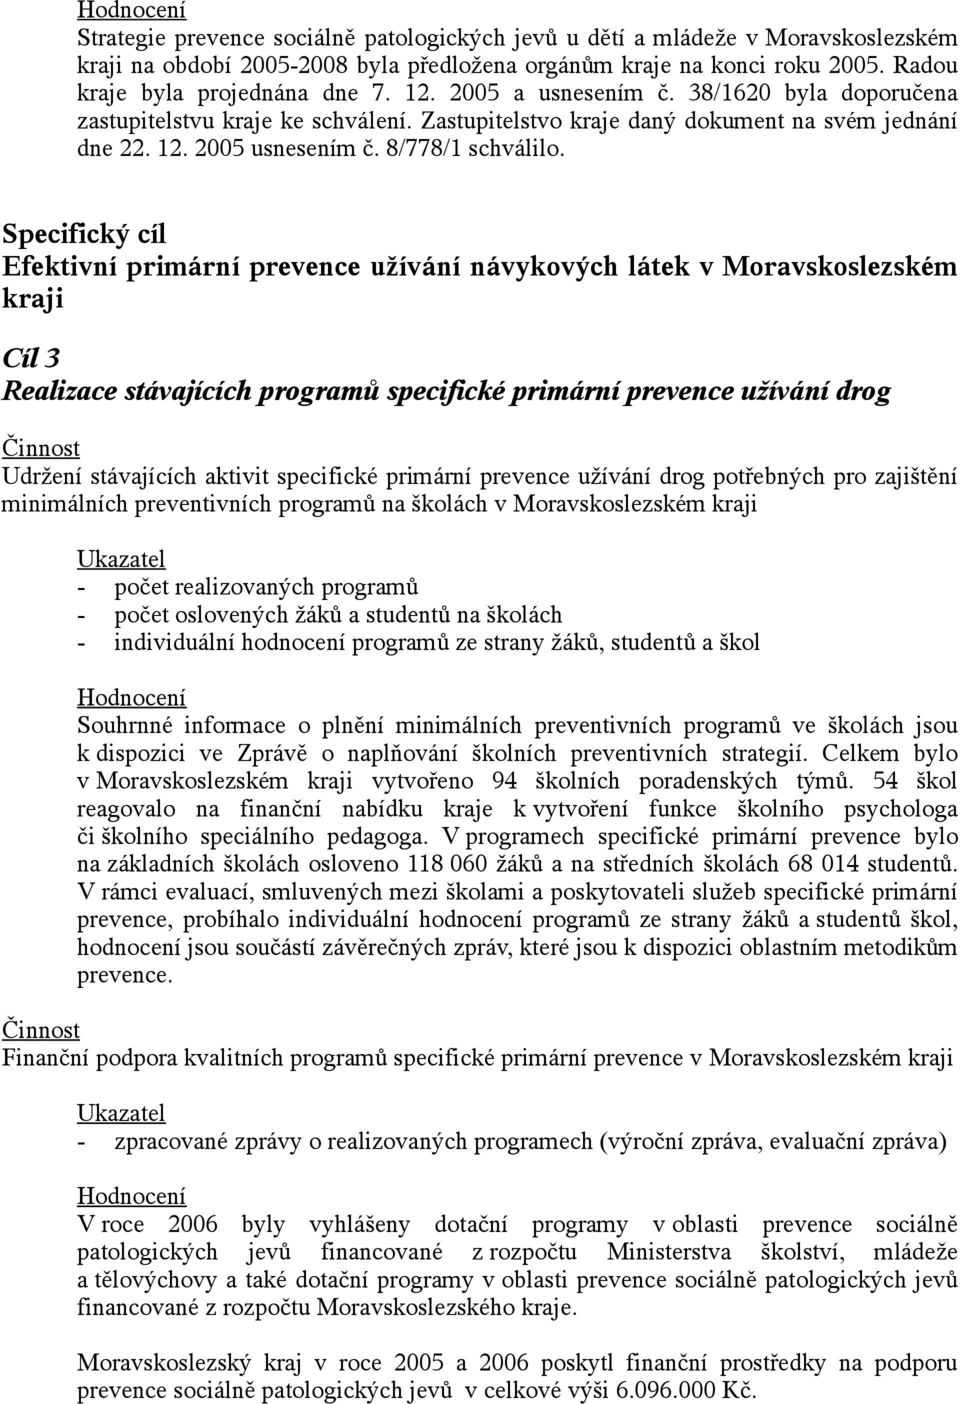 Specifický cíl Efektivní primární prevence užívání návykových látek v Moravskoslezském kraji Cíl 3 Realizace stávajících programů specifické primární prevence užívání drog Udržení stávajících aktivit